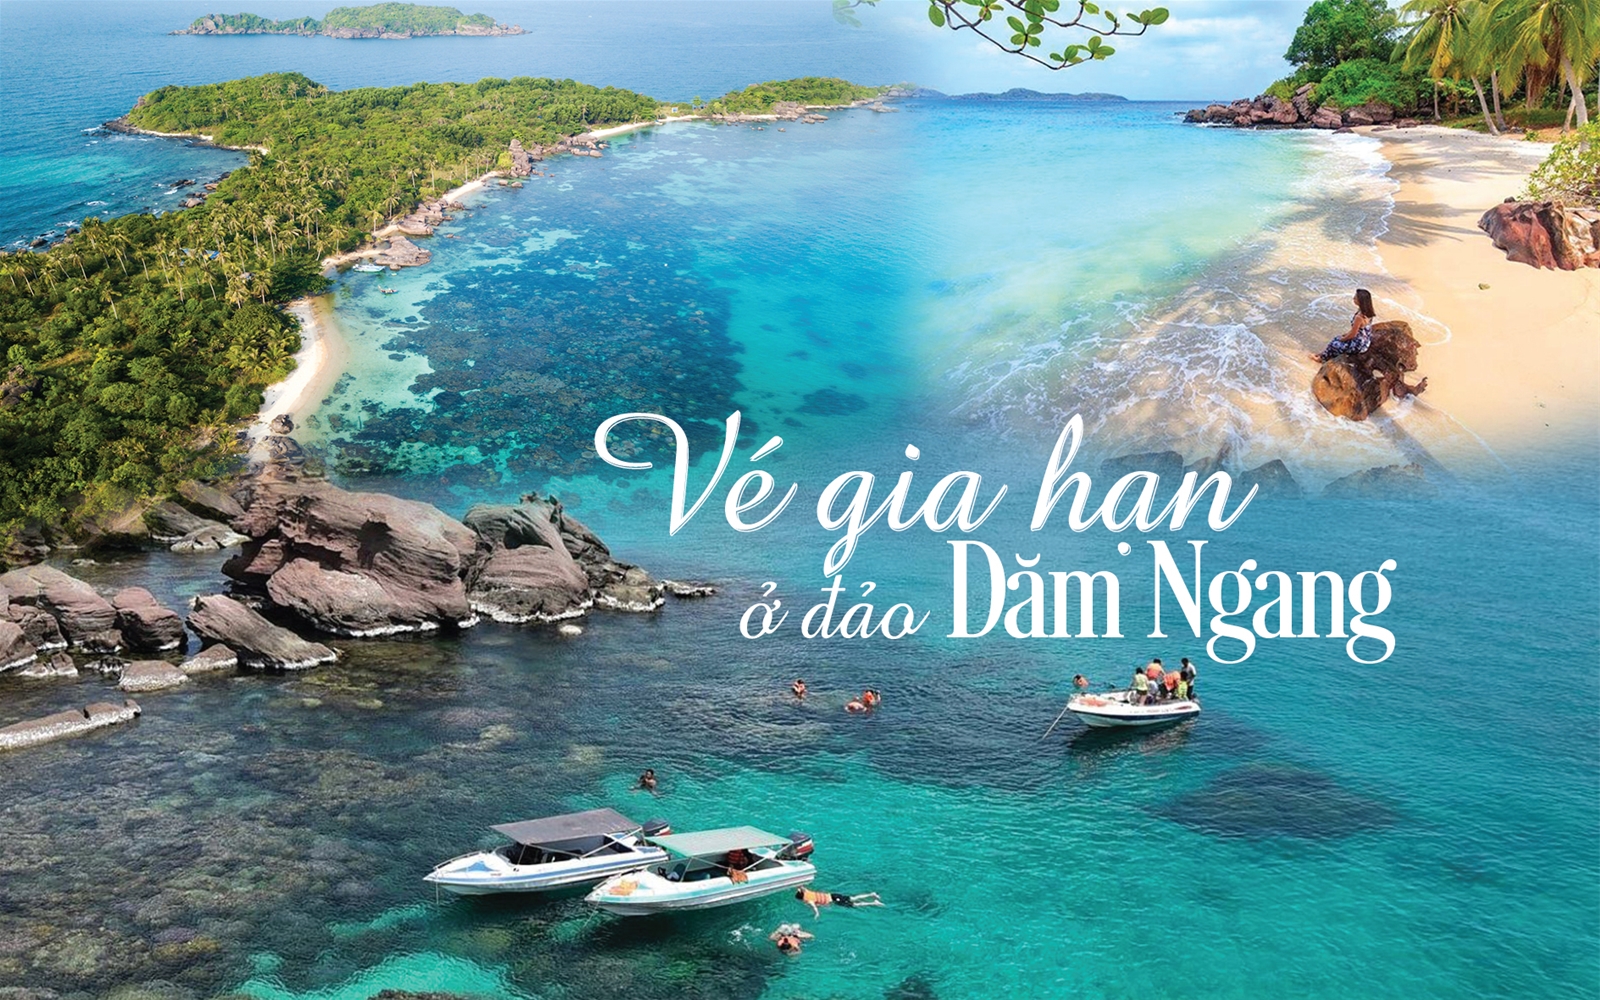 Vé gia hạn ở đảo Dăm Ngang